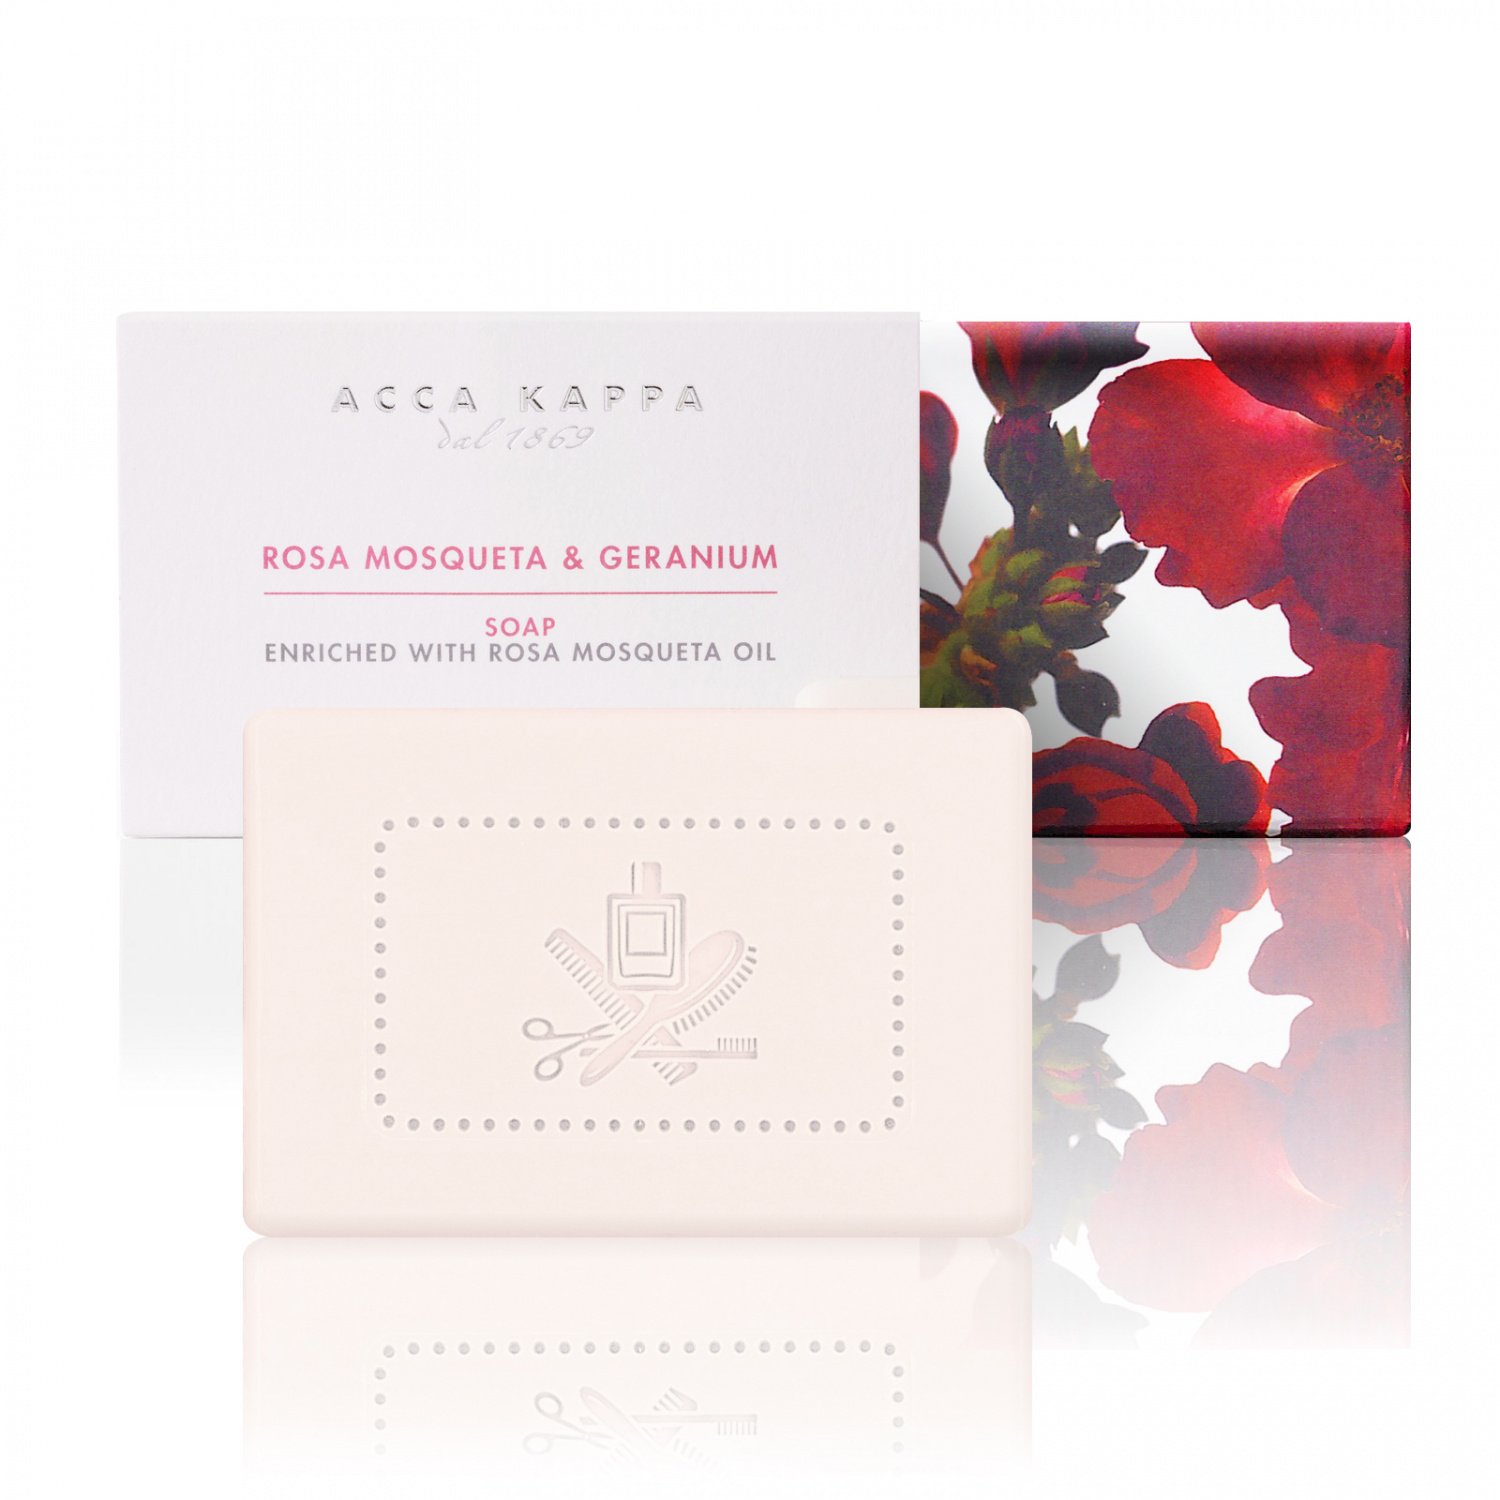 Acca Kappa Rosa Mosqueta & Geranium Soap 150g - интернет-магазин профессиональной косметики Spadream, изображение 38859